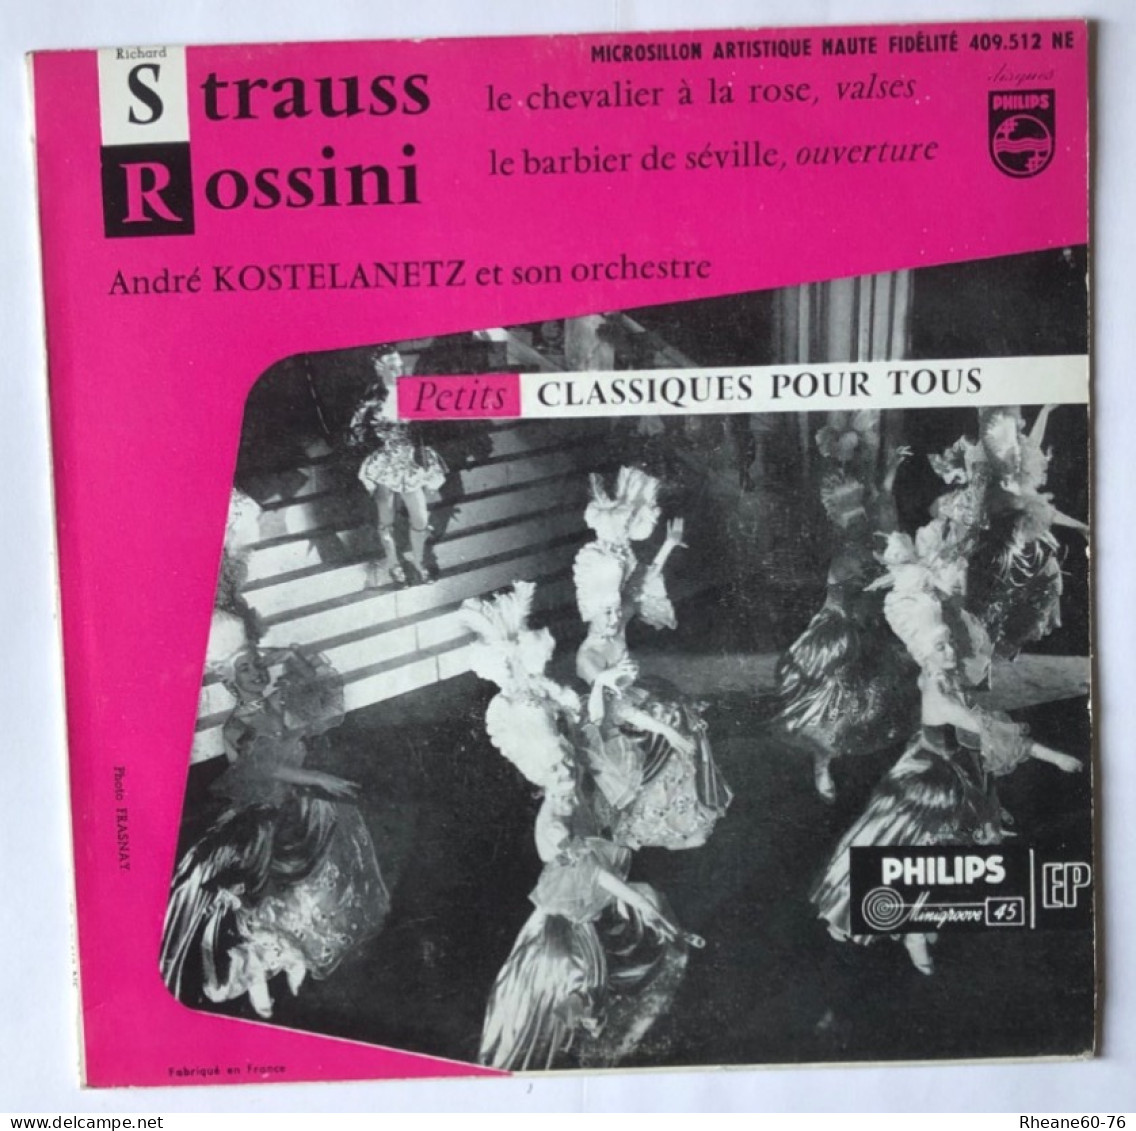 Philips 409.512 NE - 45T EP - Strauss / Rossini - A Kostelanetz Et Son Orchestre- Microsillon Artistique Haute Fidélité - Formats Spéciaux